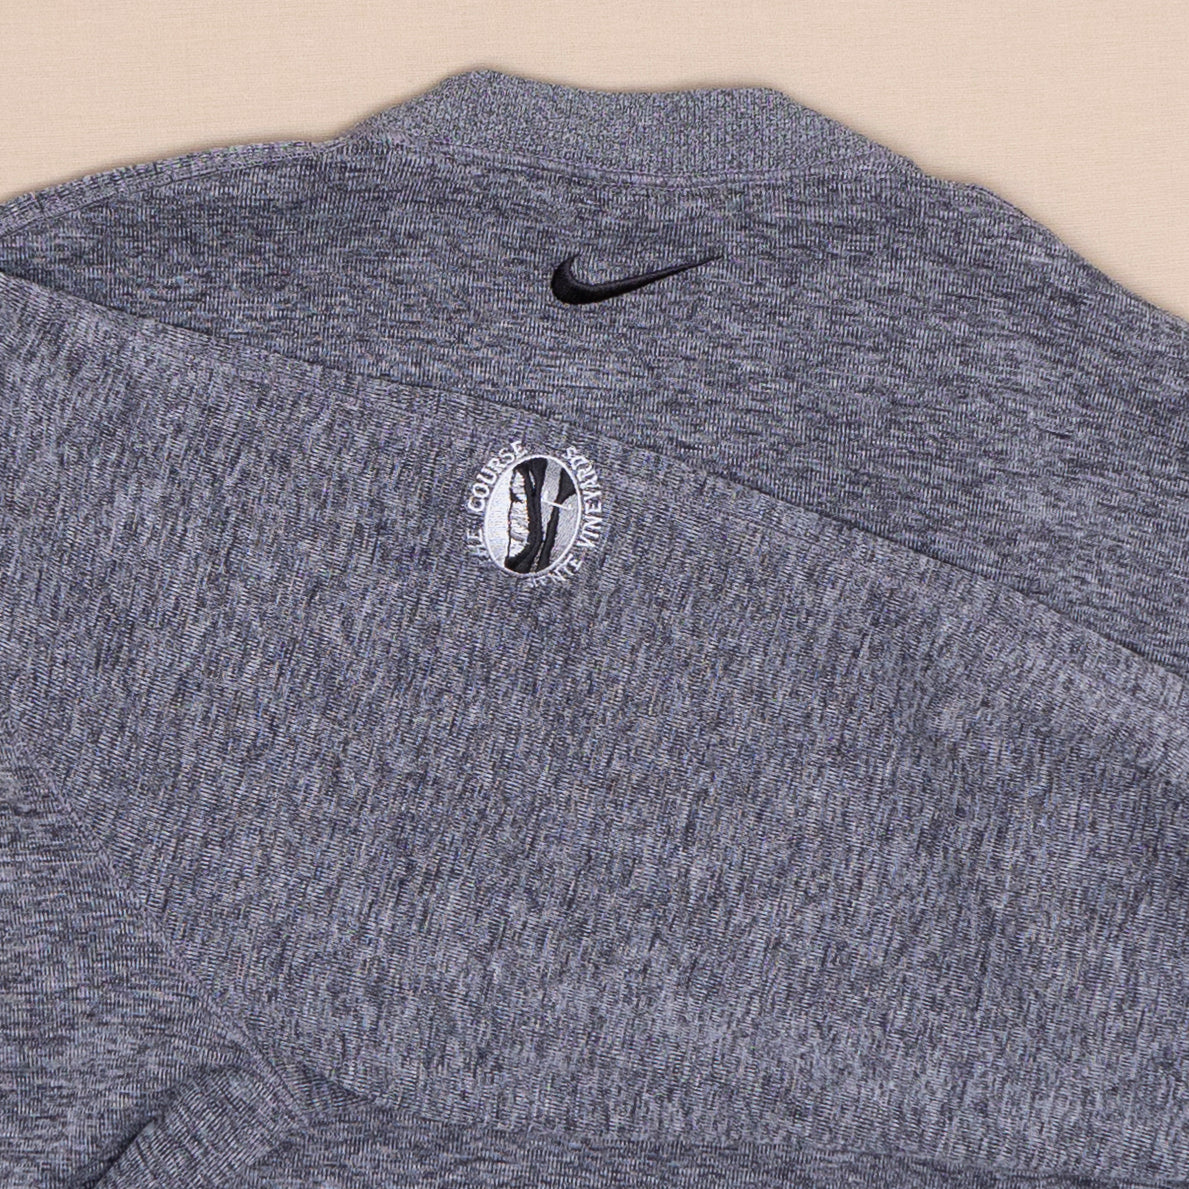 Nike Golf Sweater, XL